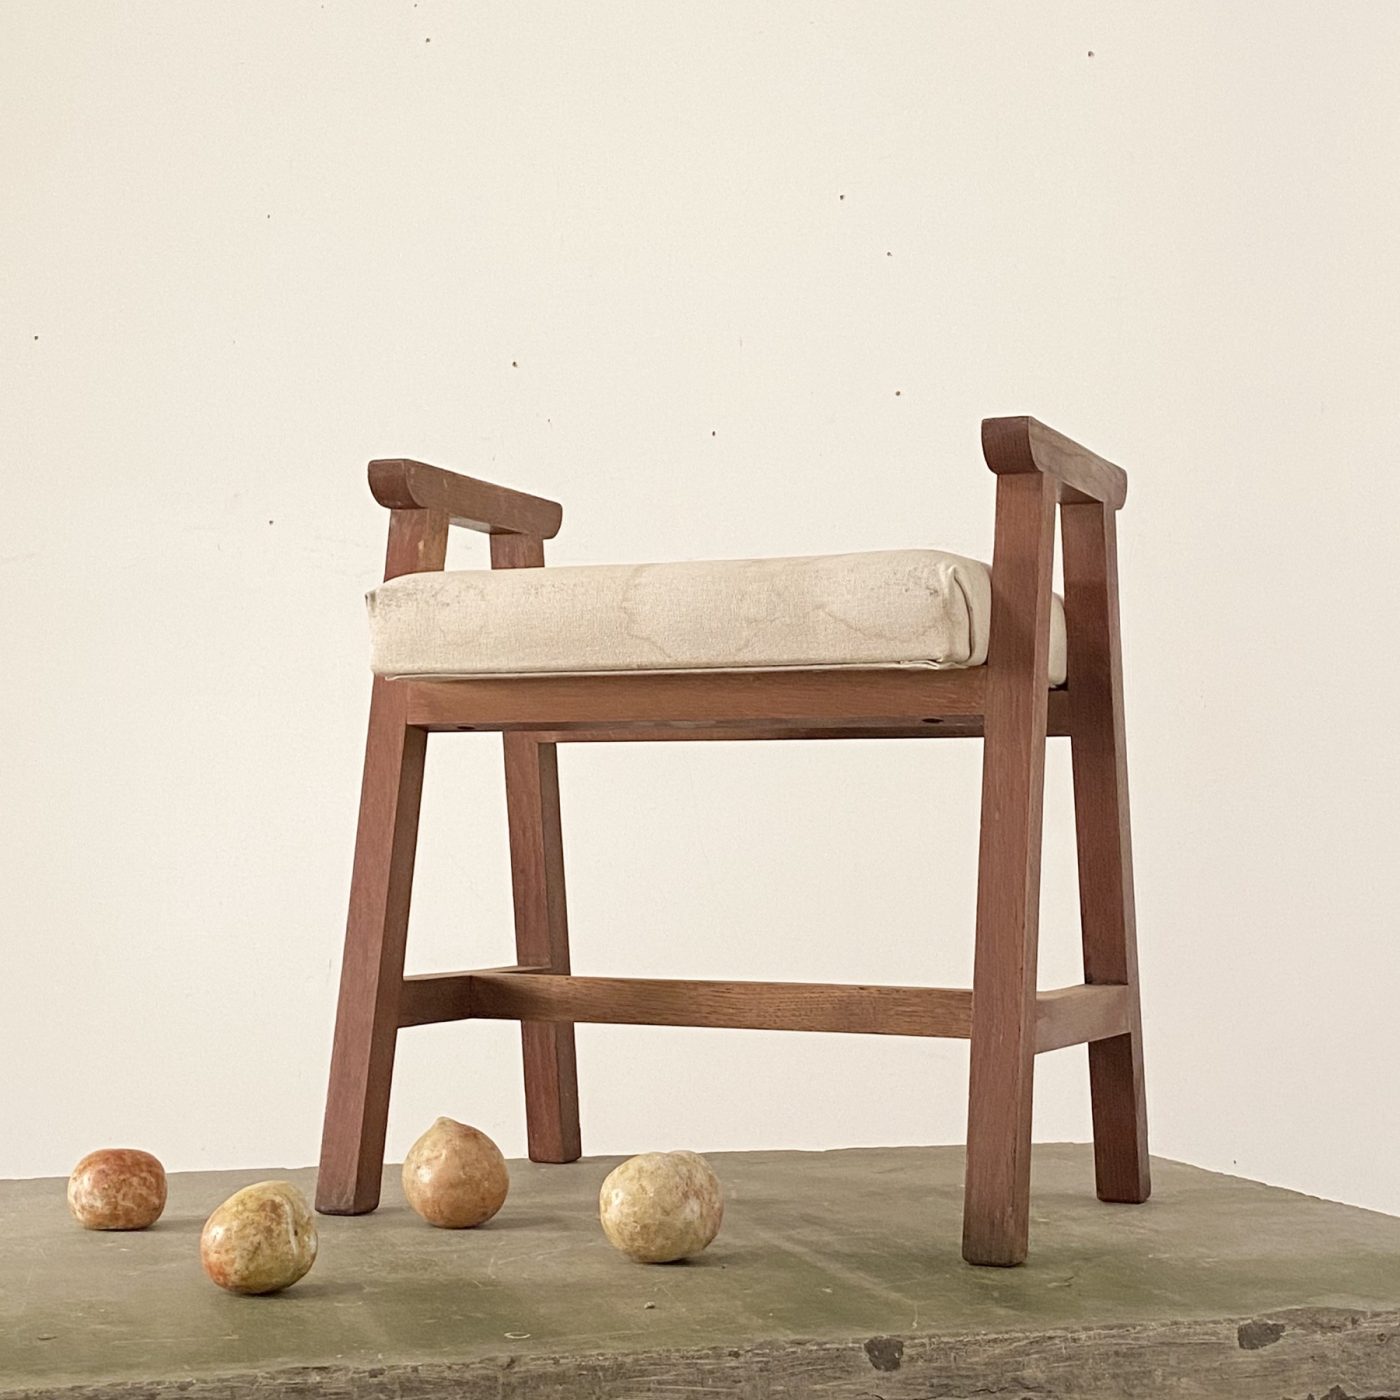 objet-vagabond-midcentury-stool0001